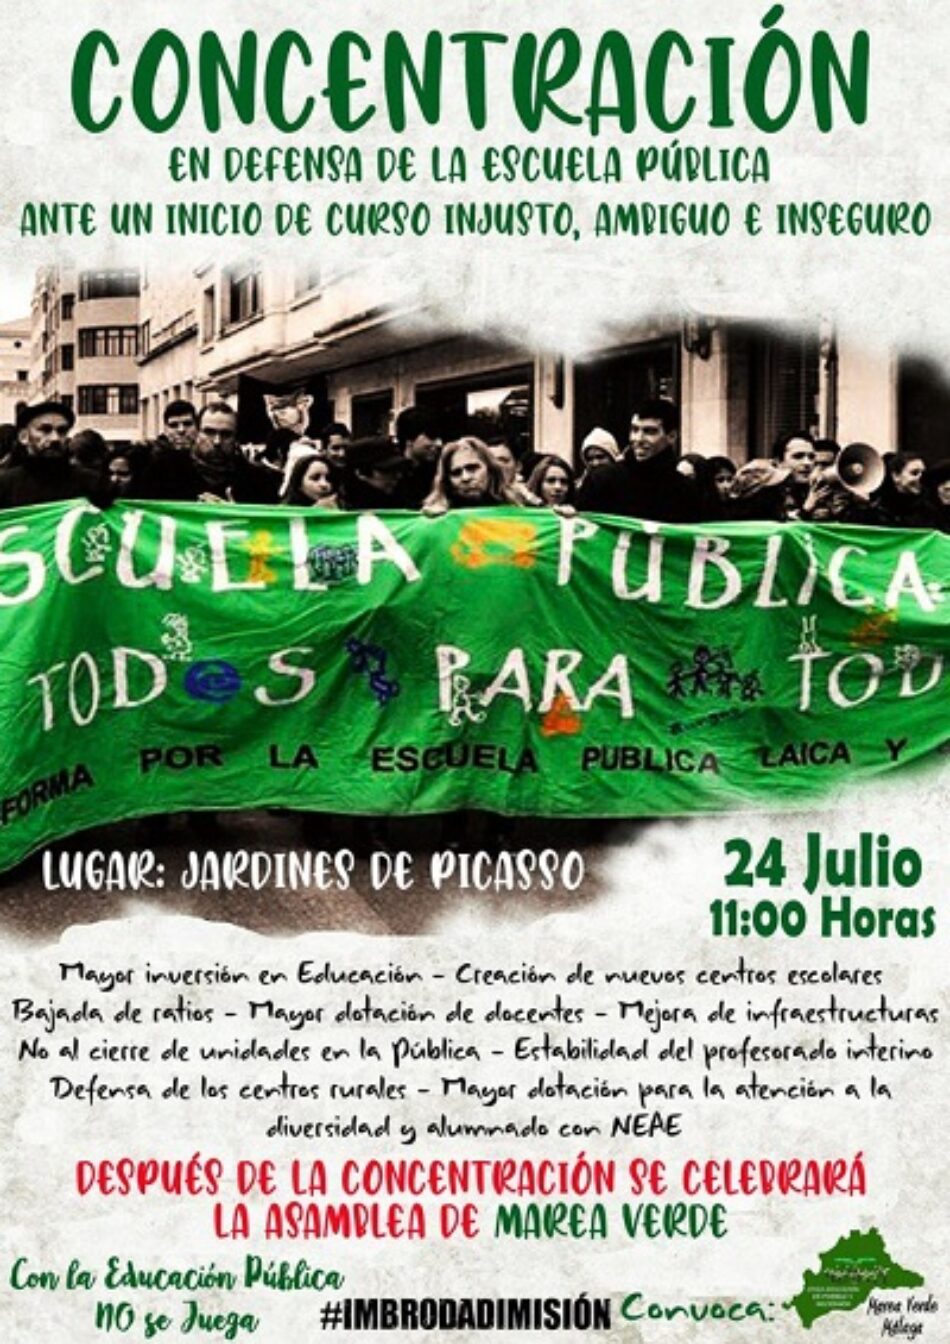 Concentración y asamblea de la Marea Verde el 24 de julio en los Jardines de Picasso de Málaga, en defensa de la escuela pública y de una vuelta al aula de forma segura y responsable